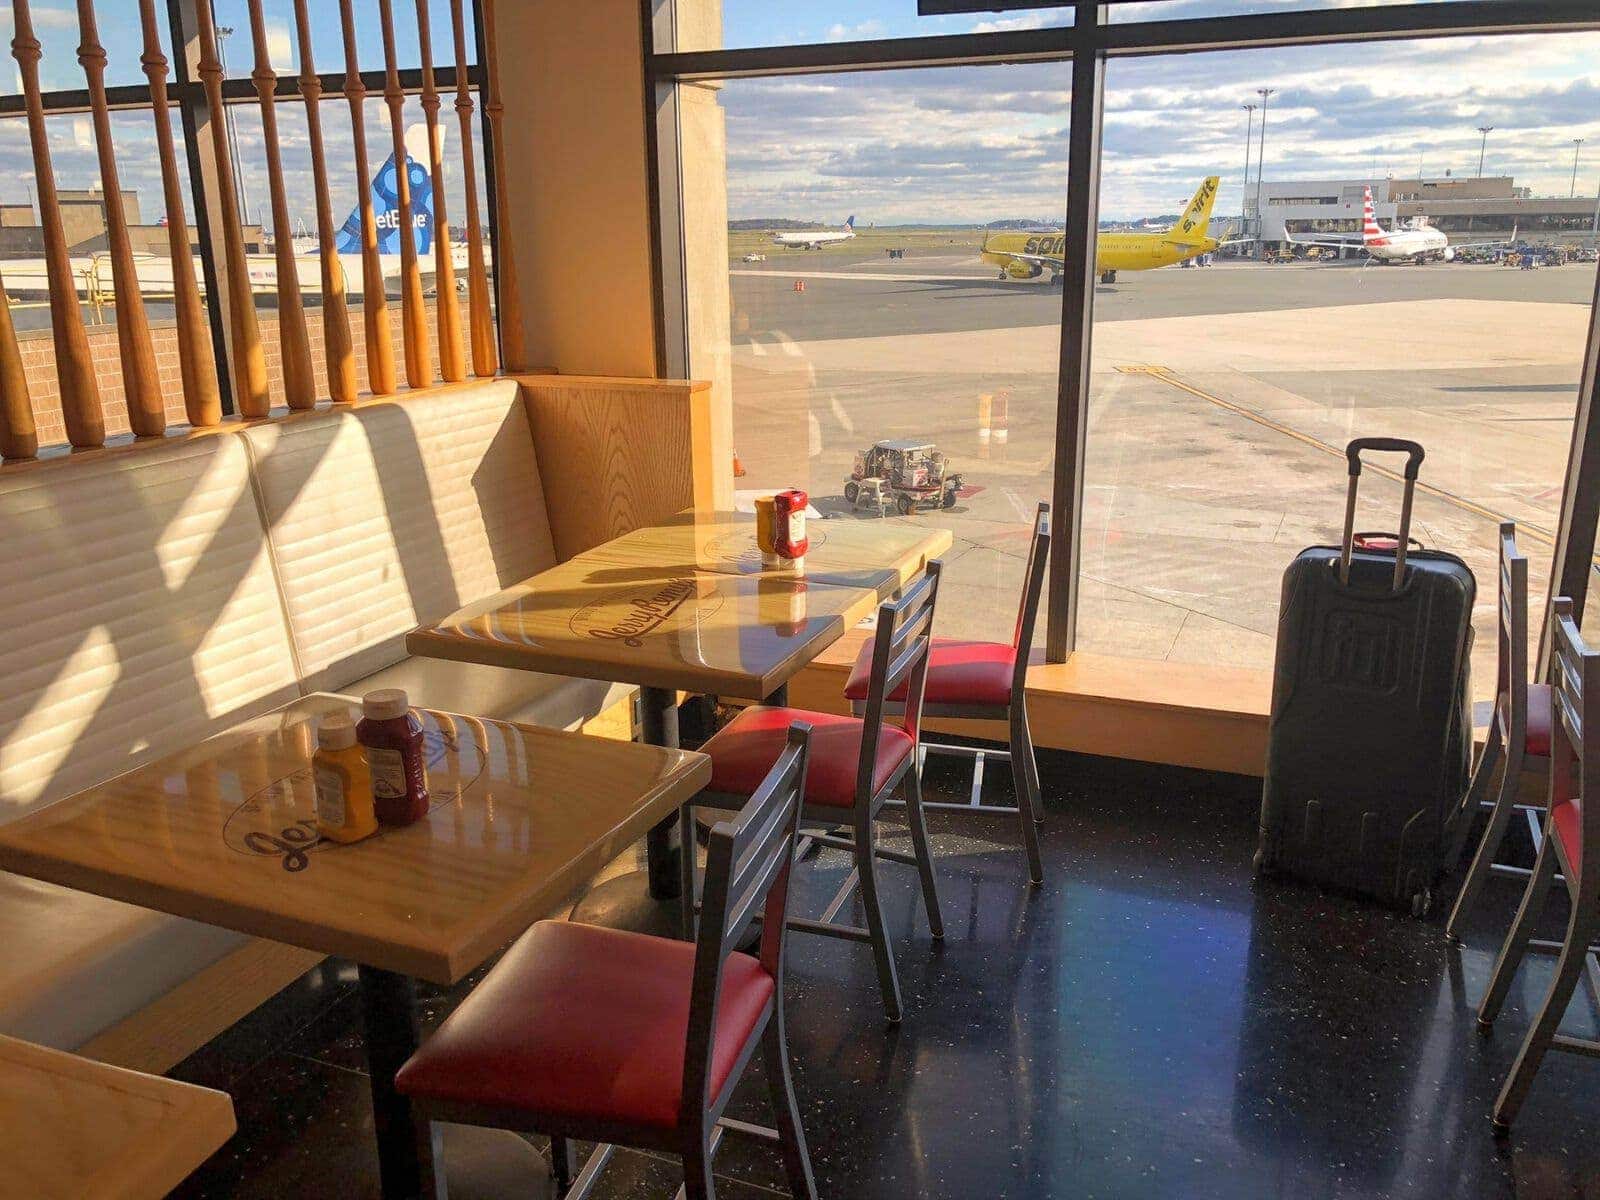 Quels sont les restaurants d’aéroports accessibles avec Priority Pass ?